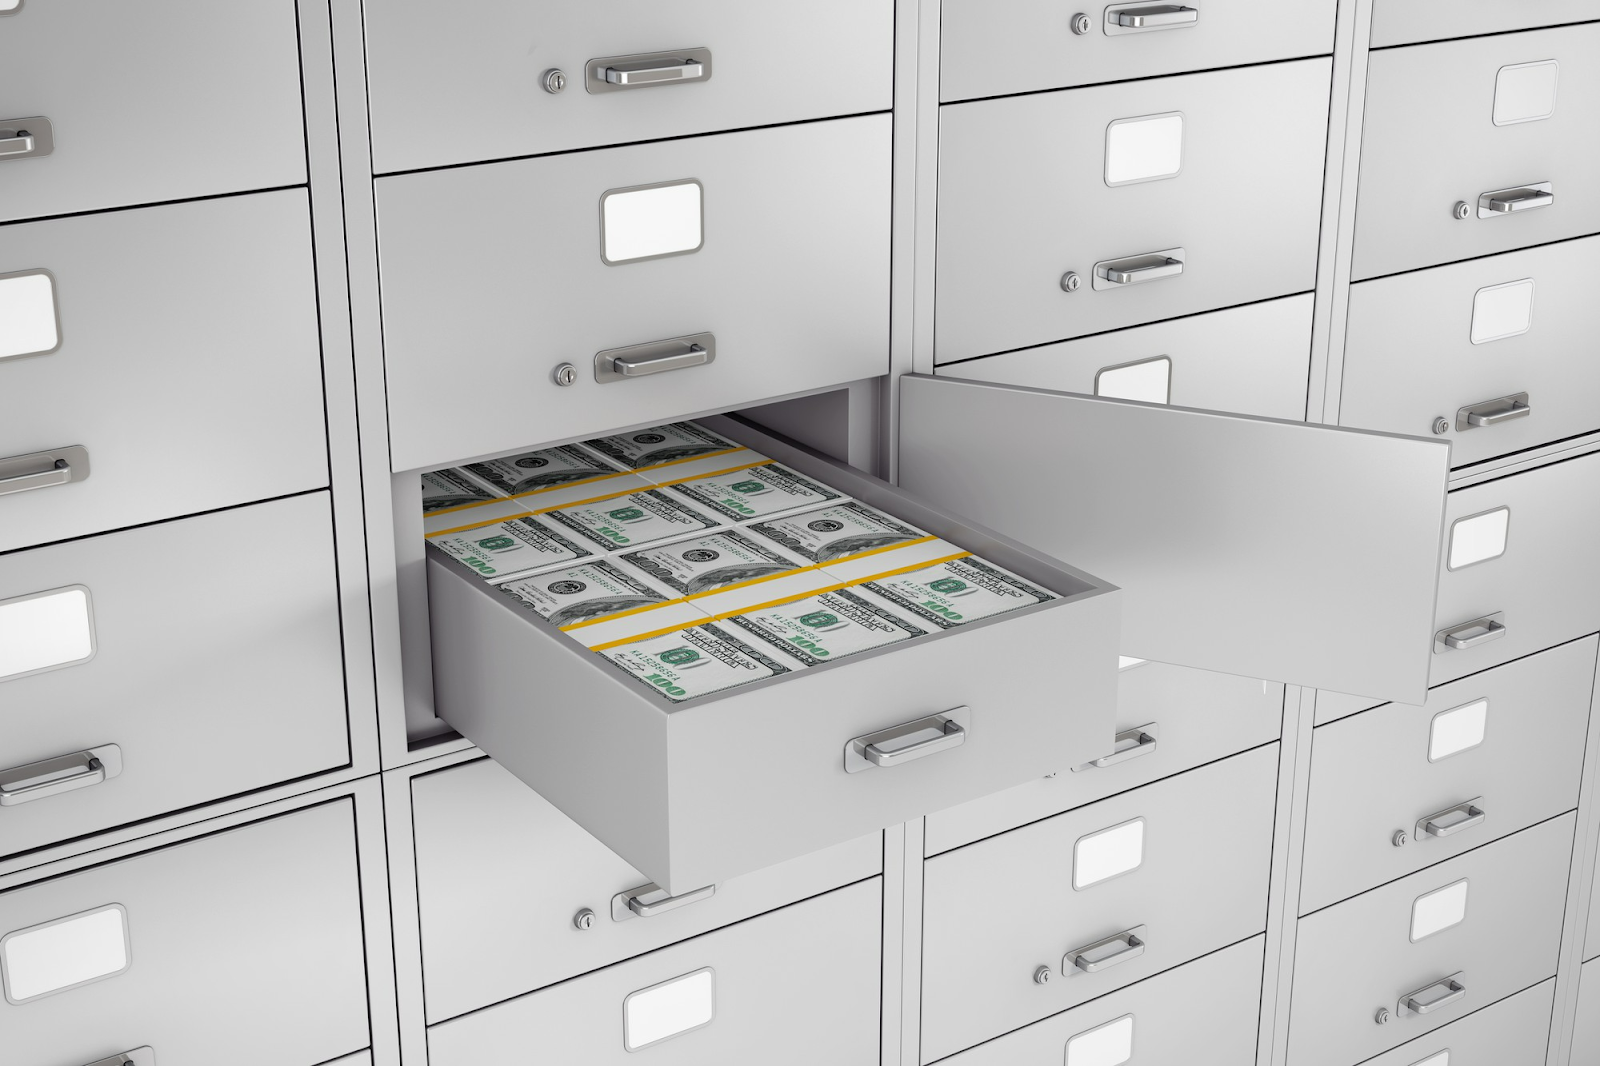 Fungsi utama dari cash drawer adalah sebagai tempat untuk menyimpan uang supaya lebih rapi dan aman